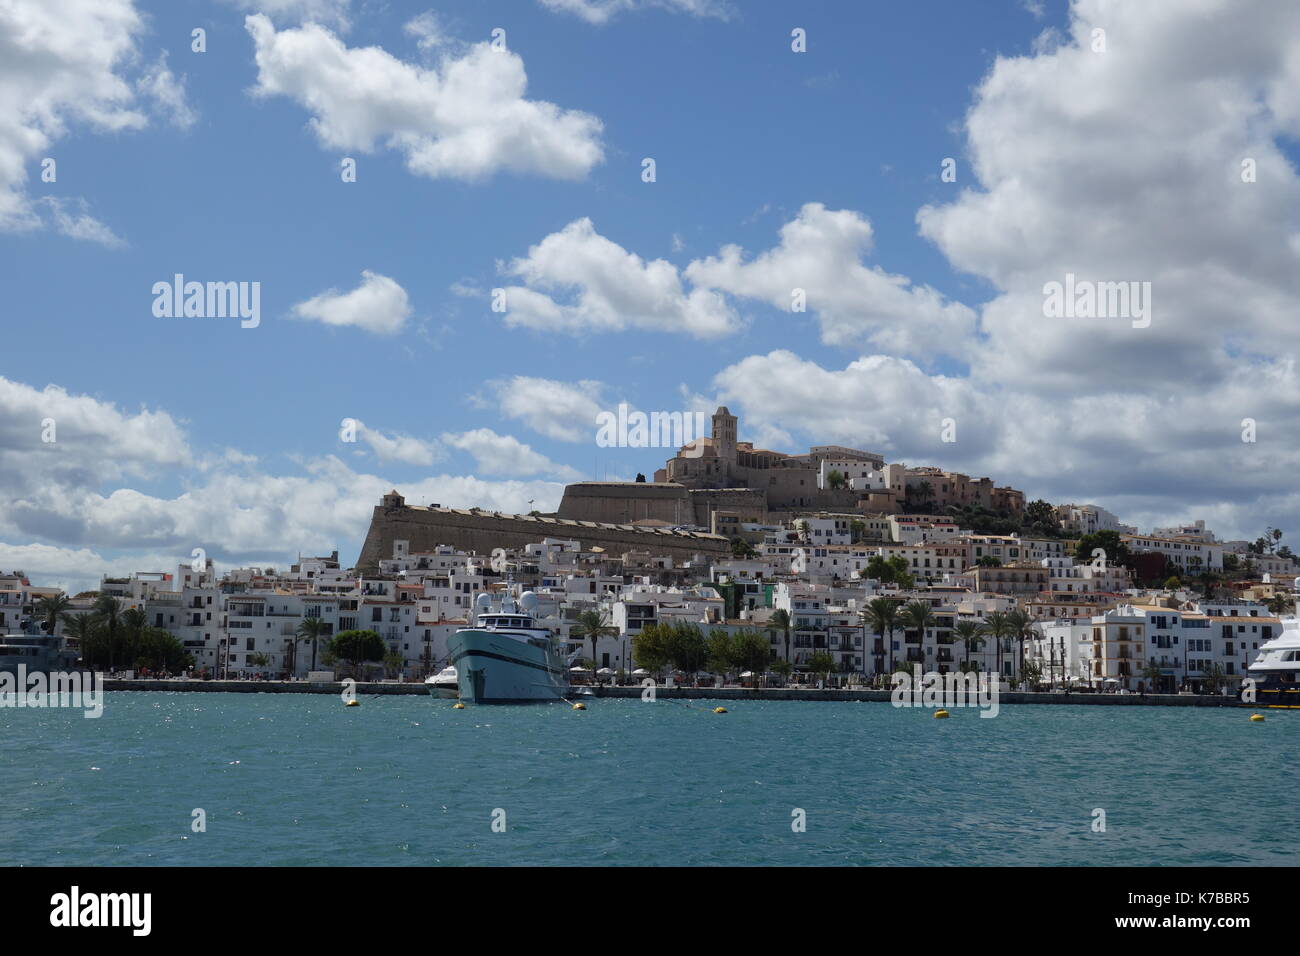 Il porto e la città vecchia di Ibiza, isole Baleari, Spagna. con una popolazione di 48,484, la città è la capitale di questa isola turistica. Foto Stock